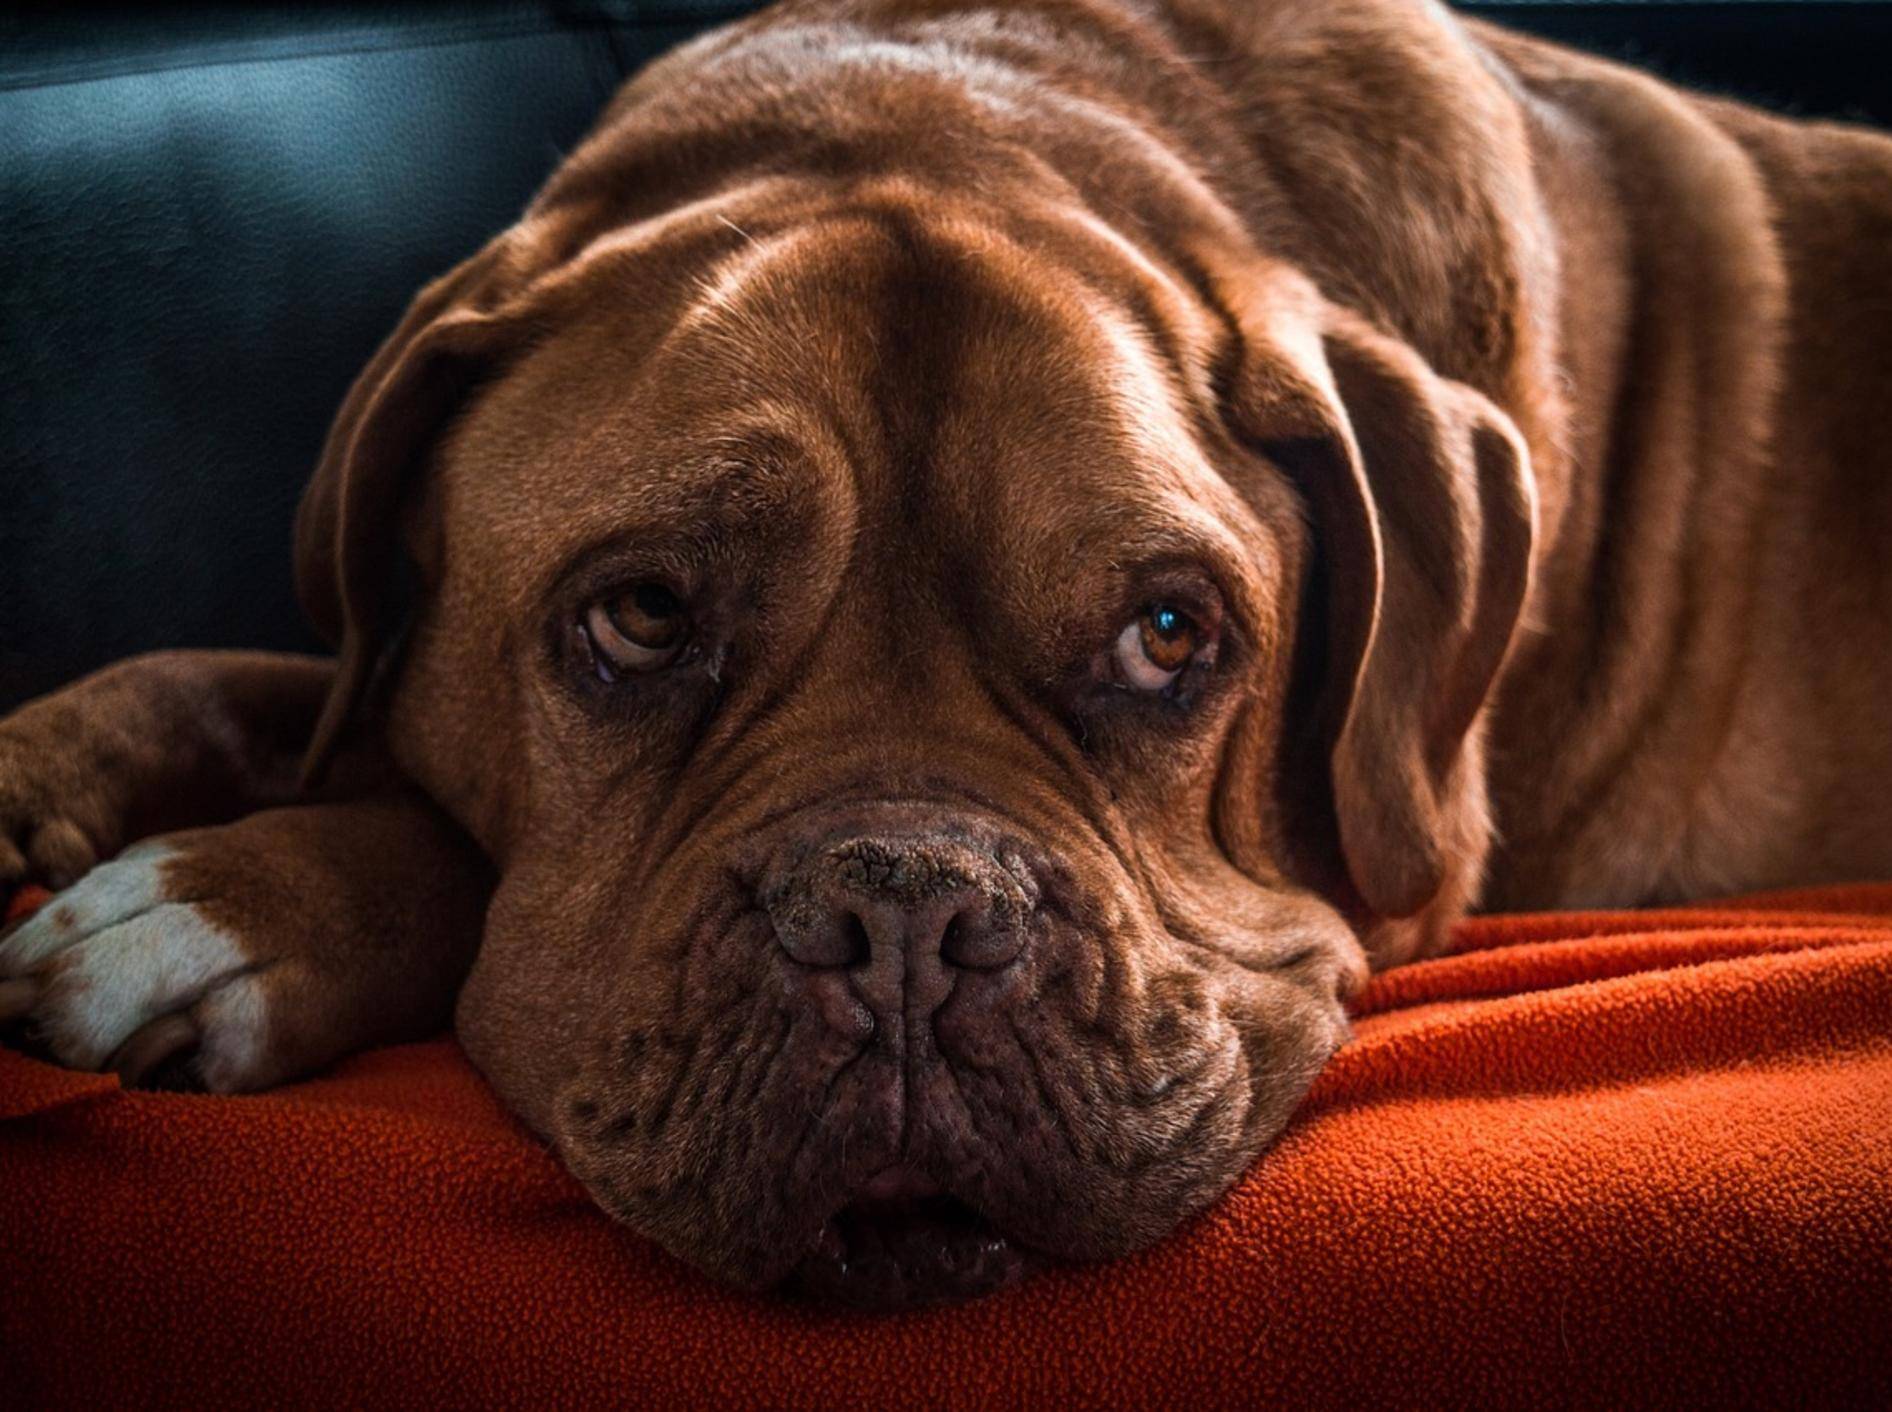 Nahaufnahme eines großen braunen Hundes, der auf einer orangeroten Decke liegt.